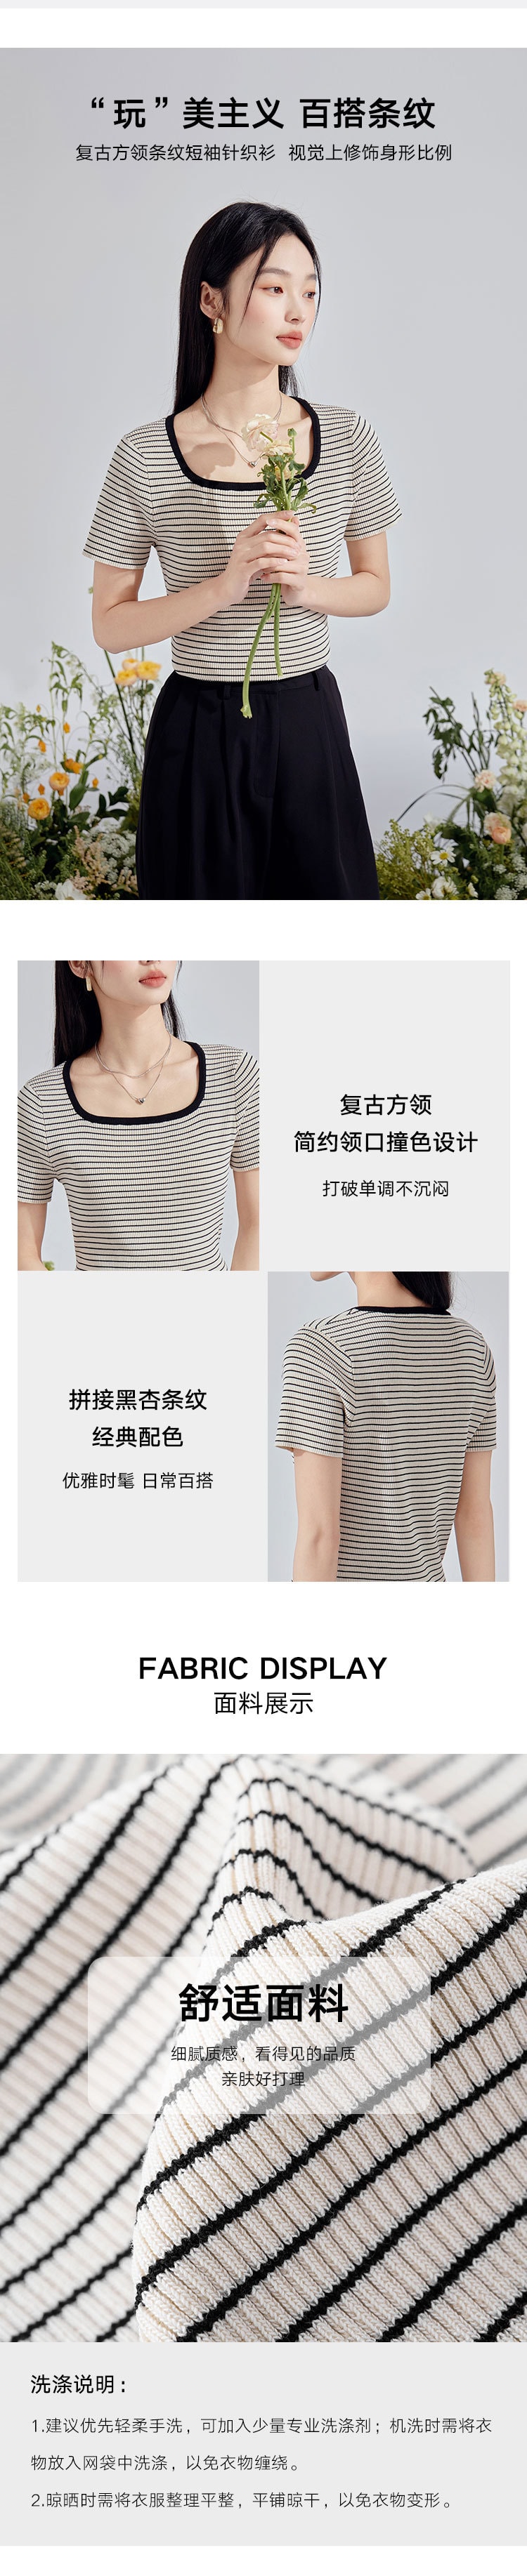 【中国直邮】HSPM 新款复古方领条纹短袖针织衫 黑白条纹 M